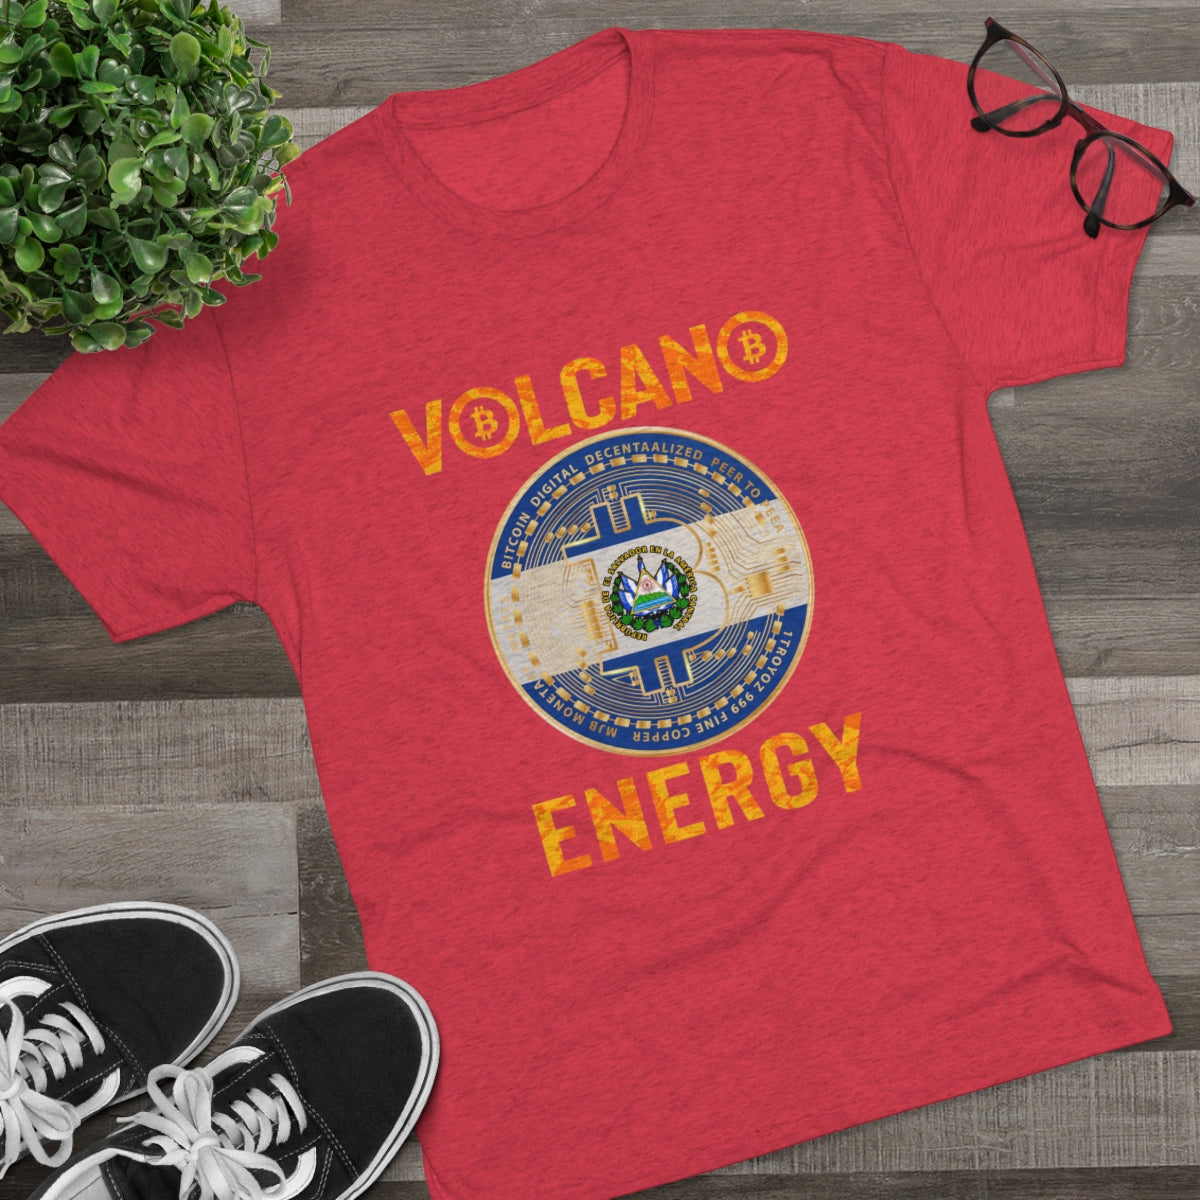 El Salvador Volcano Energy 2.0 Tee